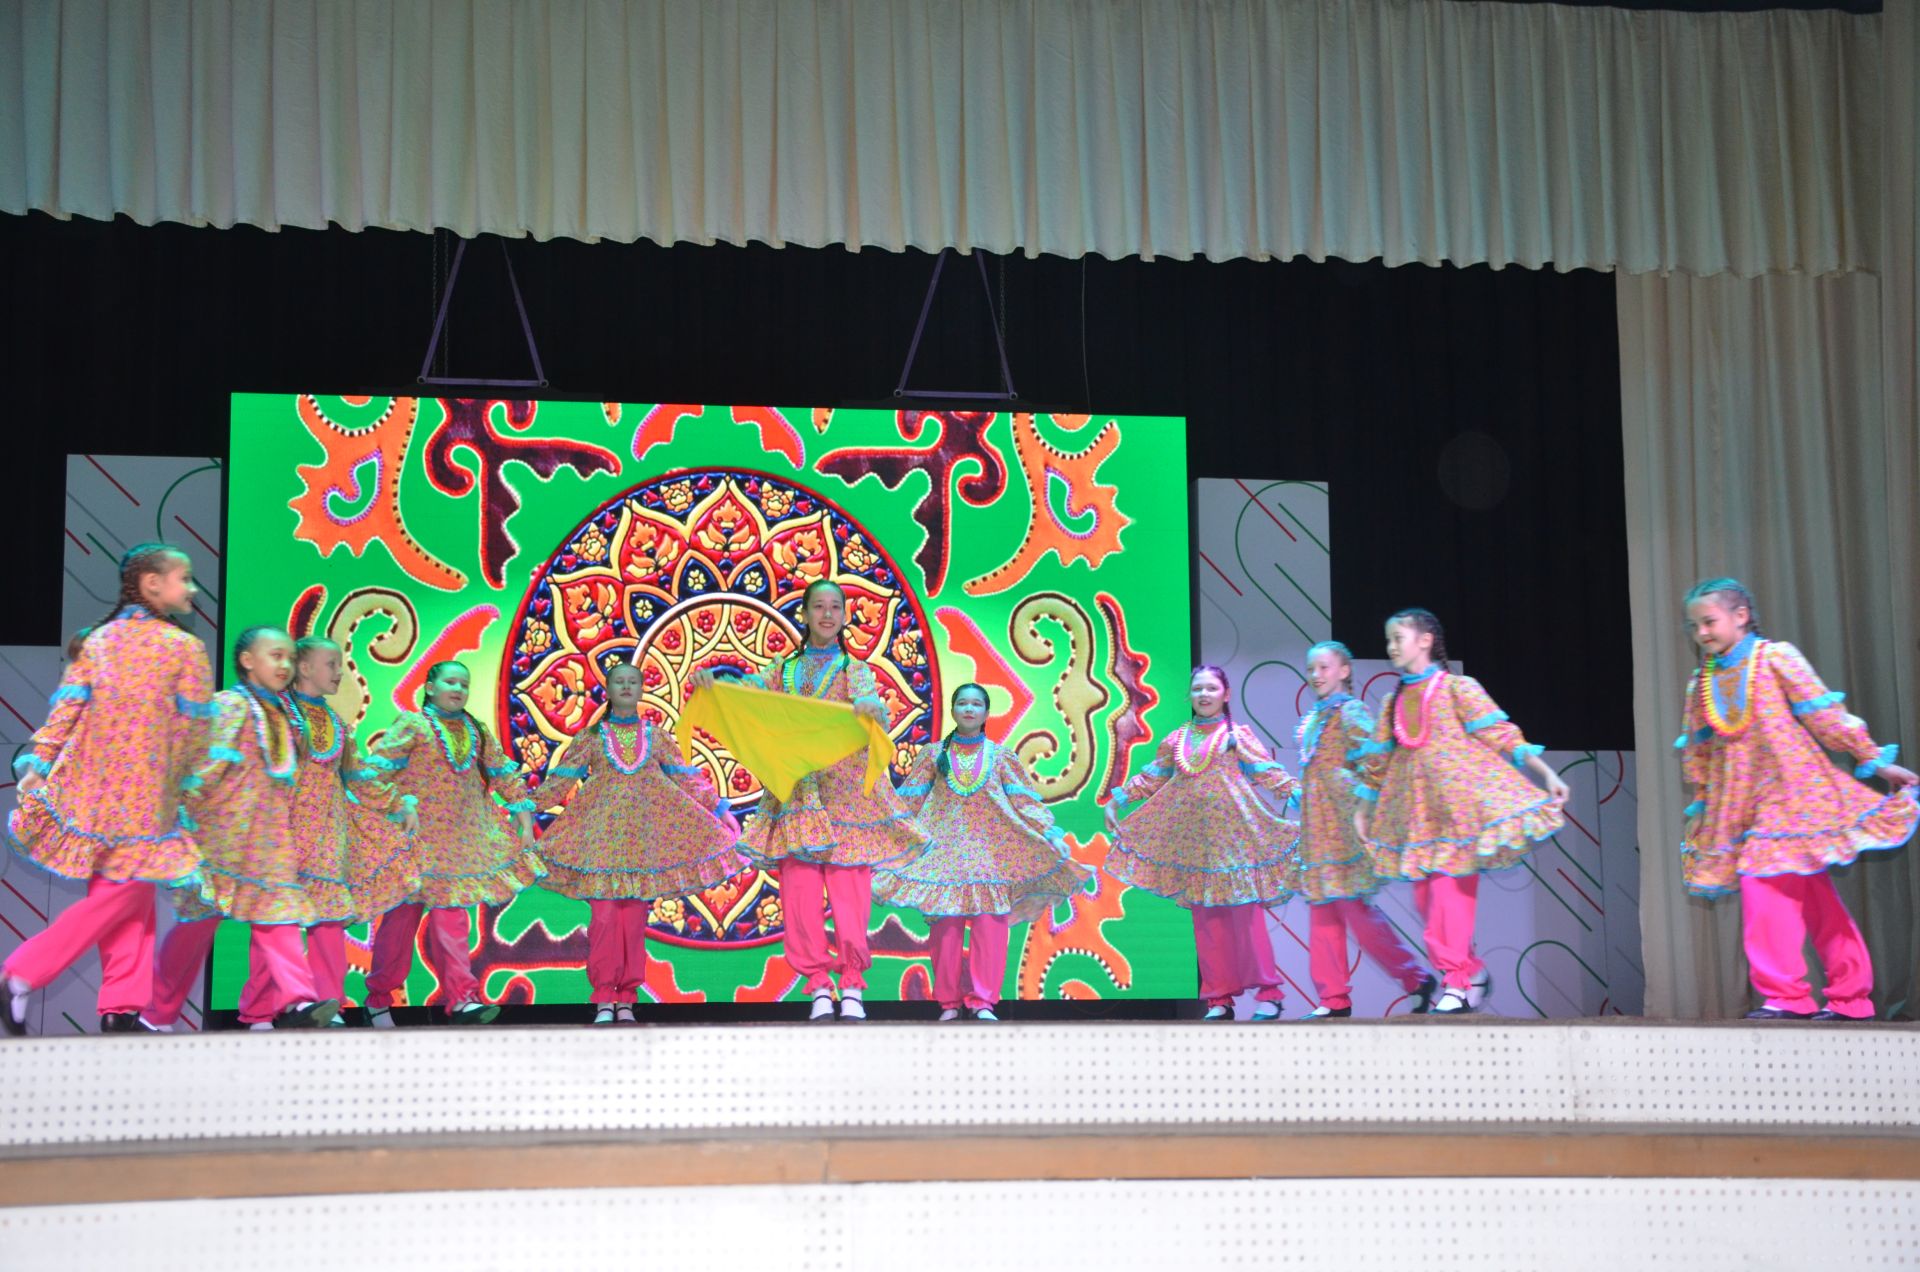 На сцене районного Дворца культуры чествовали лучших учащихся района